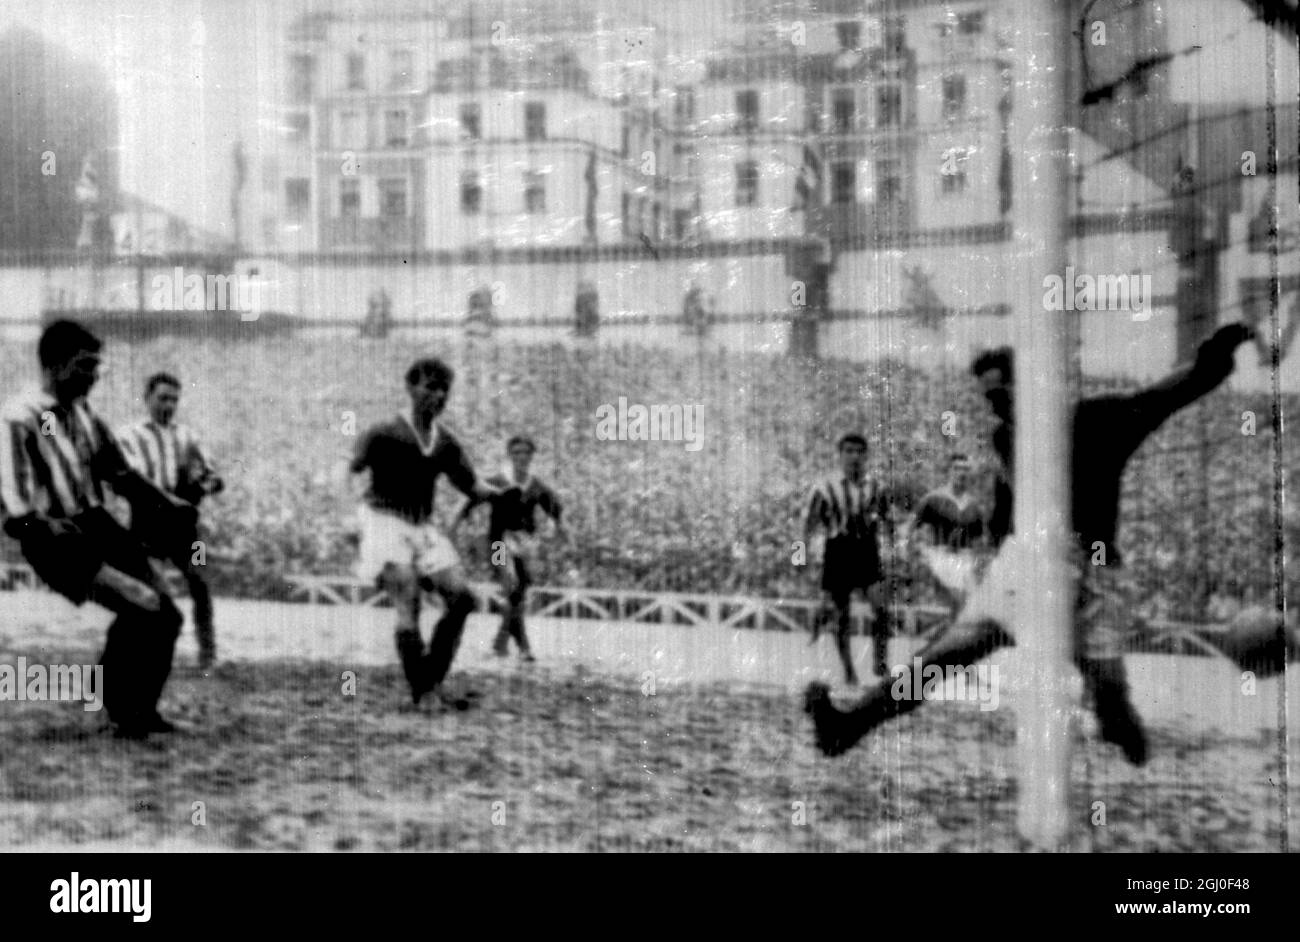 Finale des Europacups im Viertelfinale 1957 Bilbao gegen Manchester Utd Bilbao der Stürmer Merodio punktet mit dem vierten Tor Bilbaos gegen Wood, den Torhüter von Manchester United. 40.000 erlebten das Spiel, das in einer Mischung aus Schnee, Schnee und Regen gespielt wurde, endete mit einem Sieg des spansih-Teams von 5-3. Januar 1957. Stockfoto